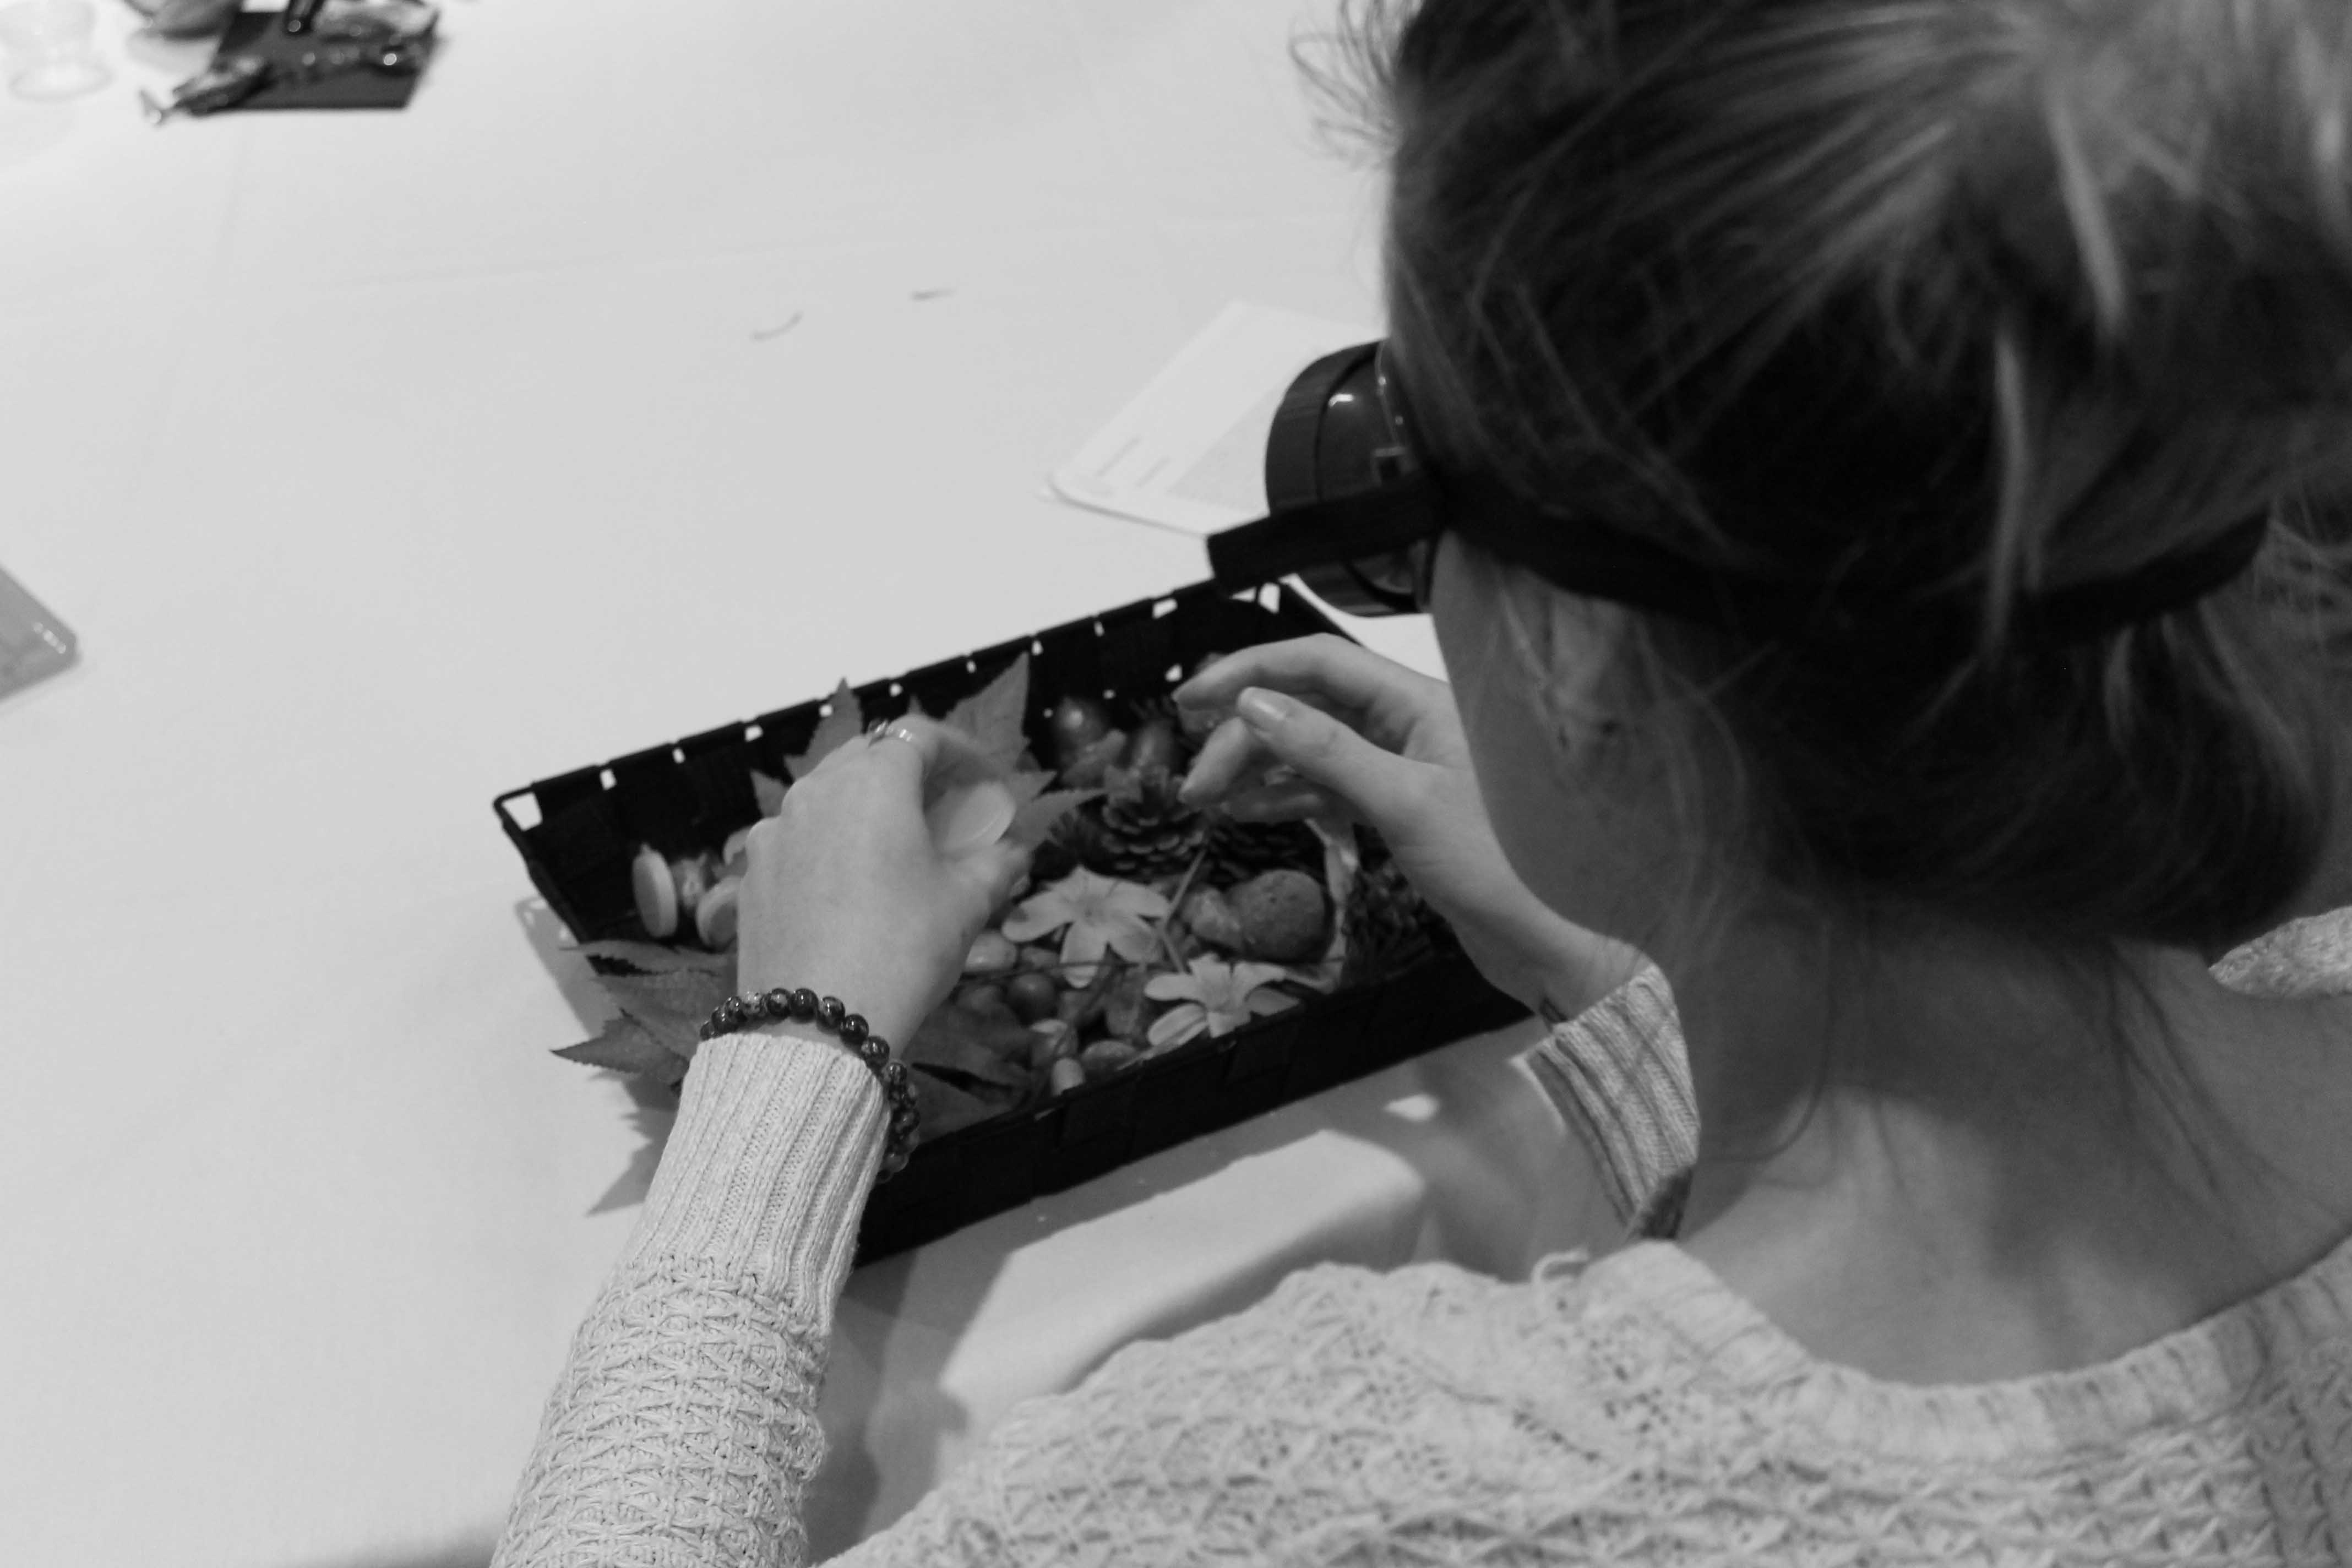 Image en noir et blanc prise par-dessus l’épaule d’une femme effectuant un exercice de formation par simulation. Elle porte des lunettes de simulation et manipule des objets sensoriels dans une boîte.